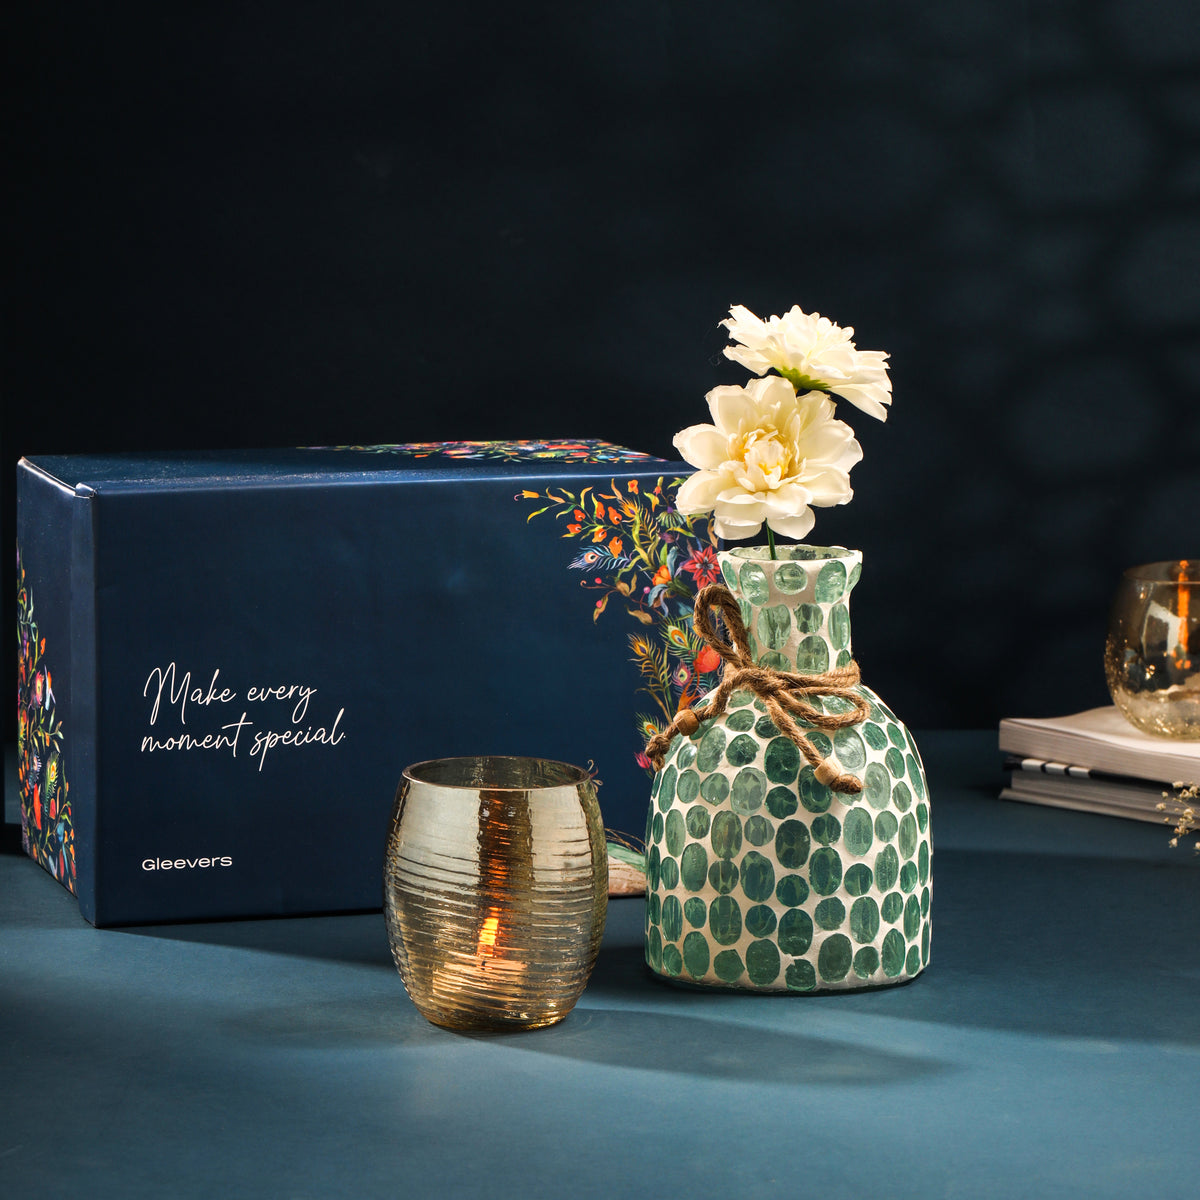 Gleevers Diwali Gift Pack |Diwali Gift Pack of 2 with Vase & Tea Light Holder | Diwali Gift Item (Tea Light Holder (Golden) + Glass Vase (Mosaic Green))